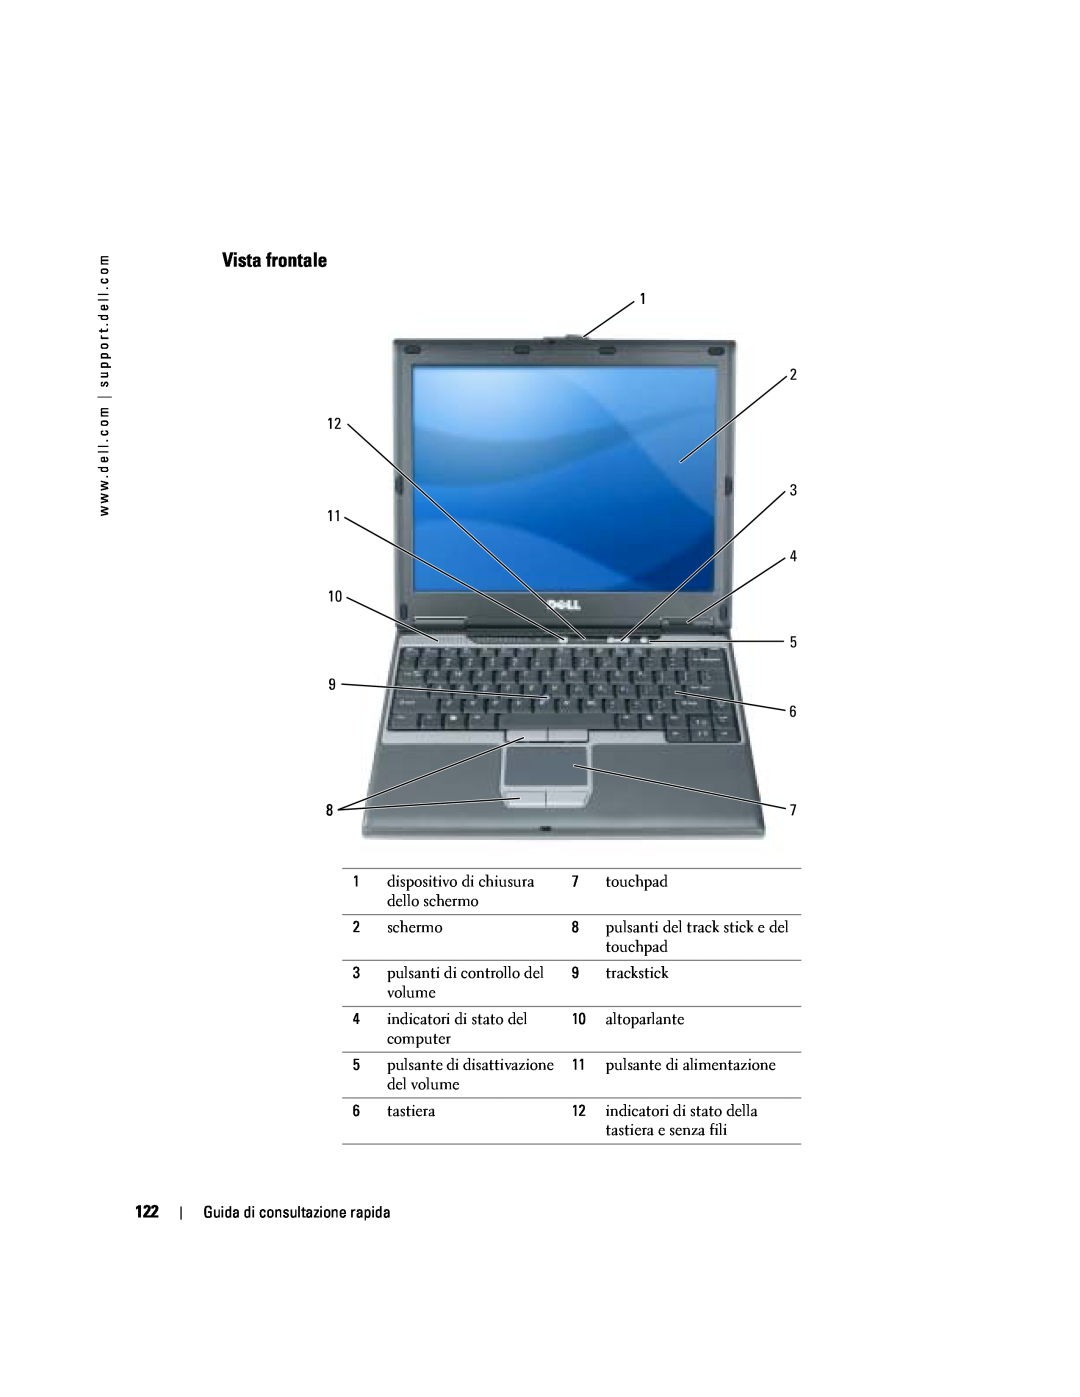 Dell PP06S manual Vista frontale, Guida di consultazione rapida 